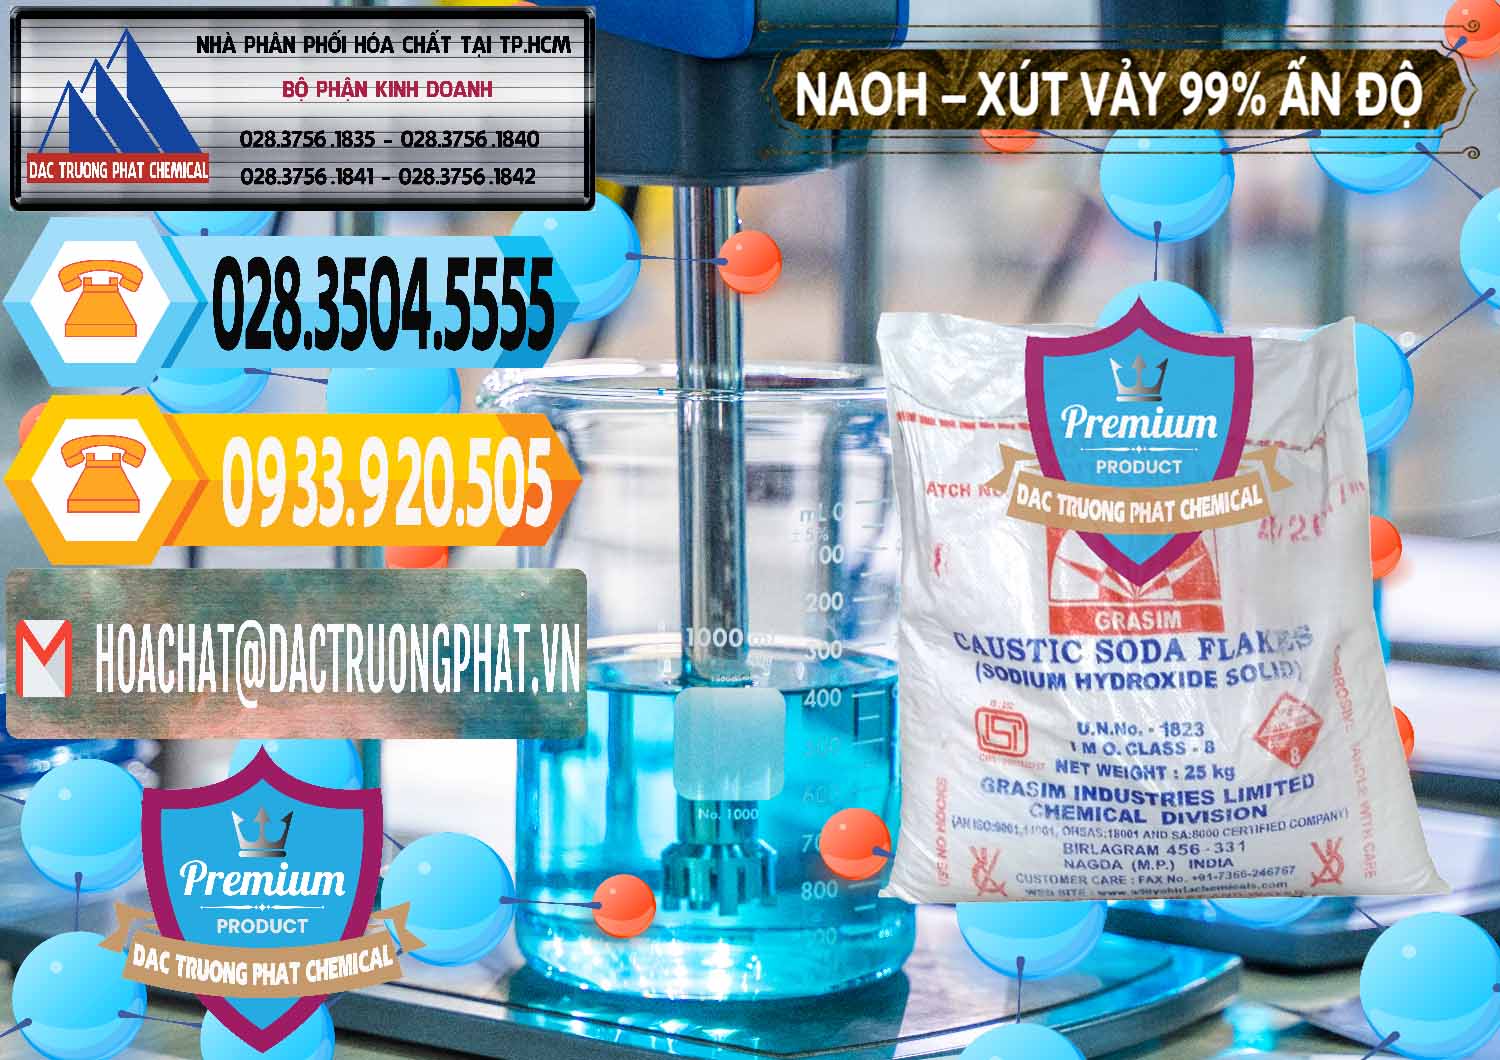 Nơi chuyên cung cấp _ bán Xút Vảy - NaOH Vảy 99% Aditya Birla Grasim Ấn Độ India - 0171 - Phân phối - nhập khẩu hóa chất tại TP.HCM - hoachattayrua.net